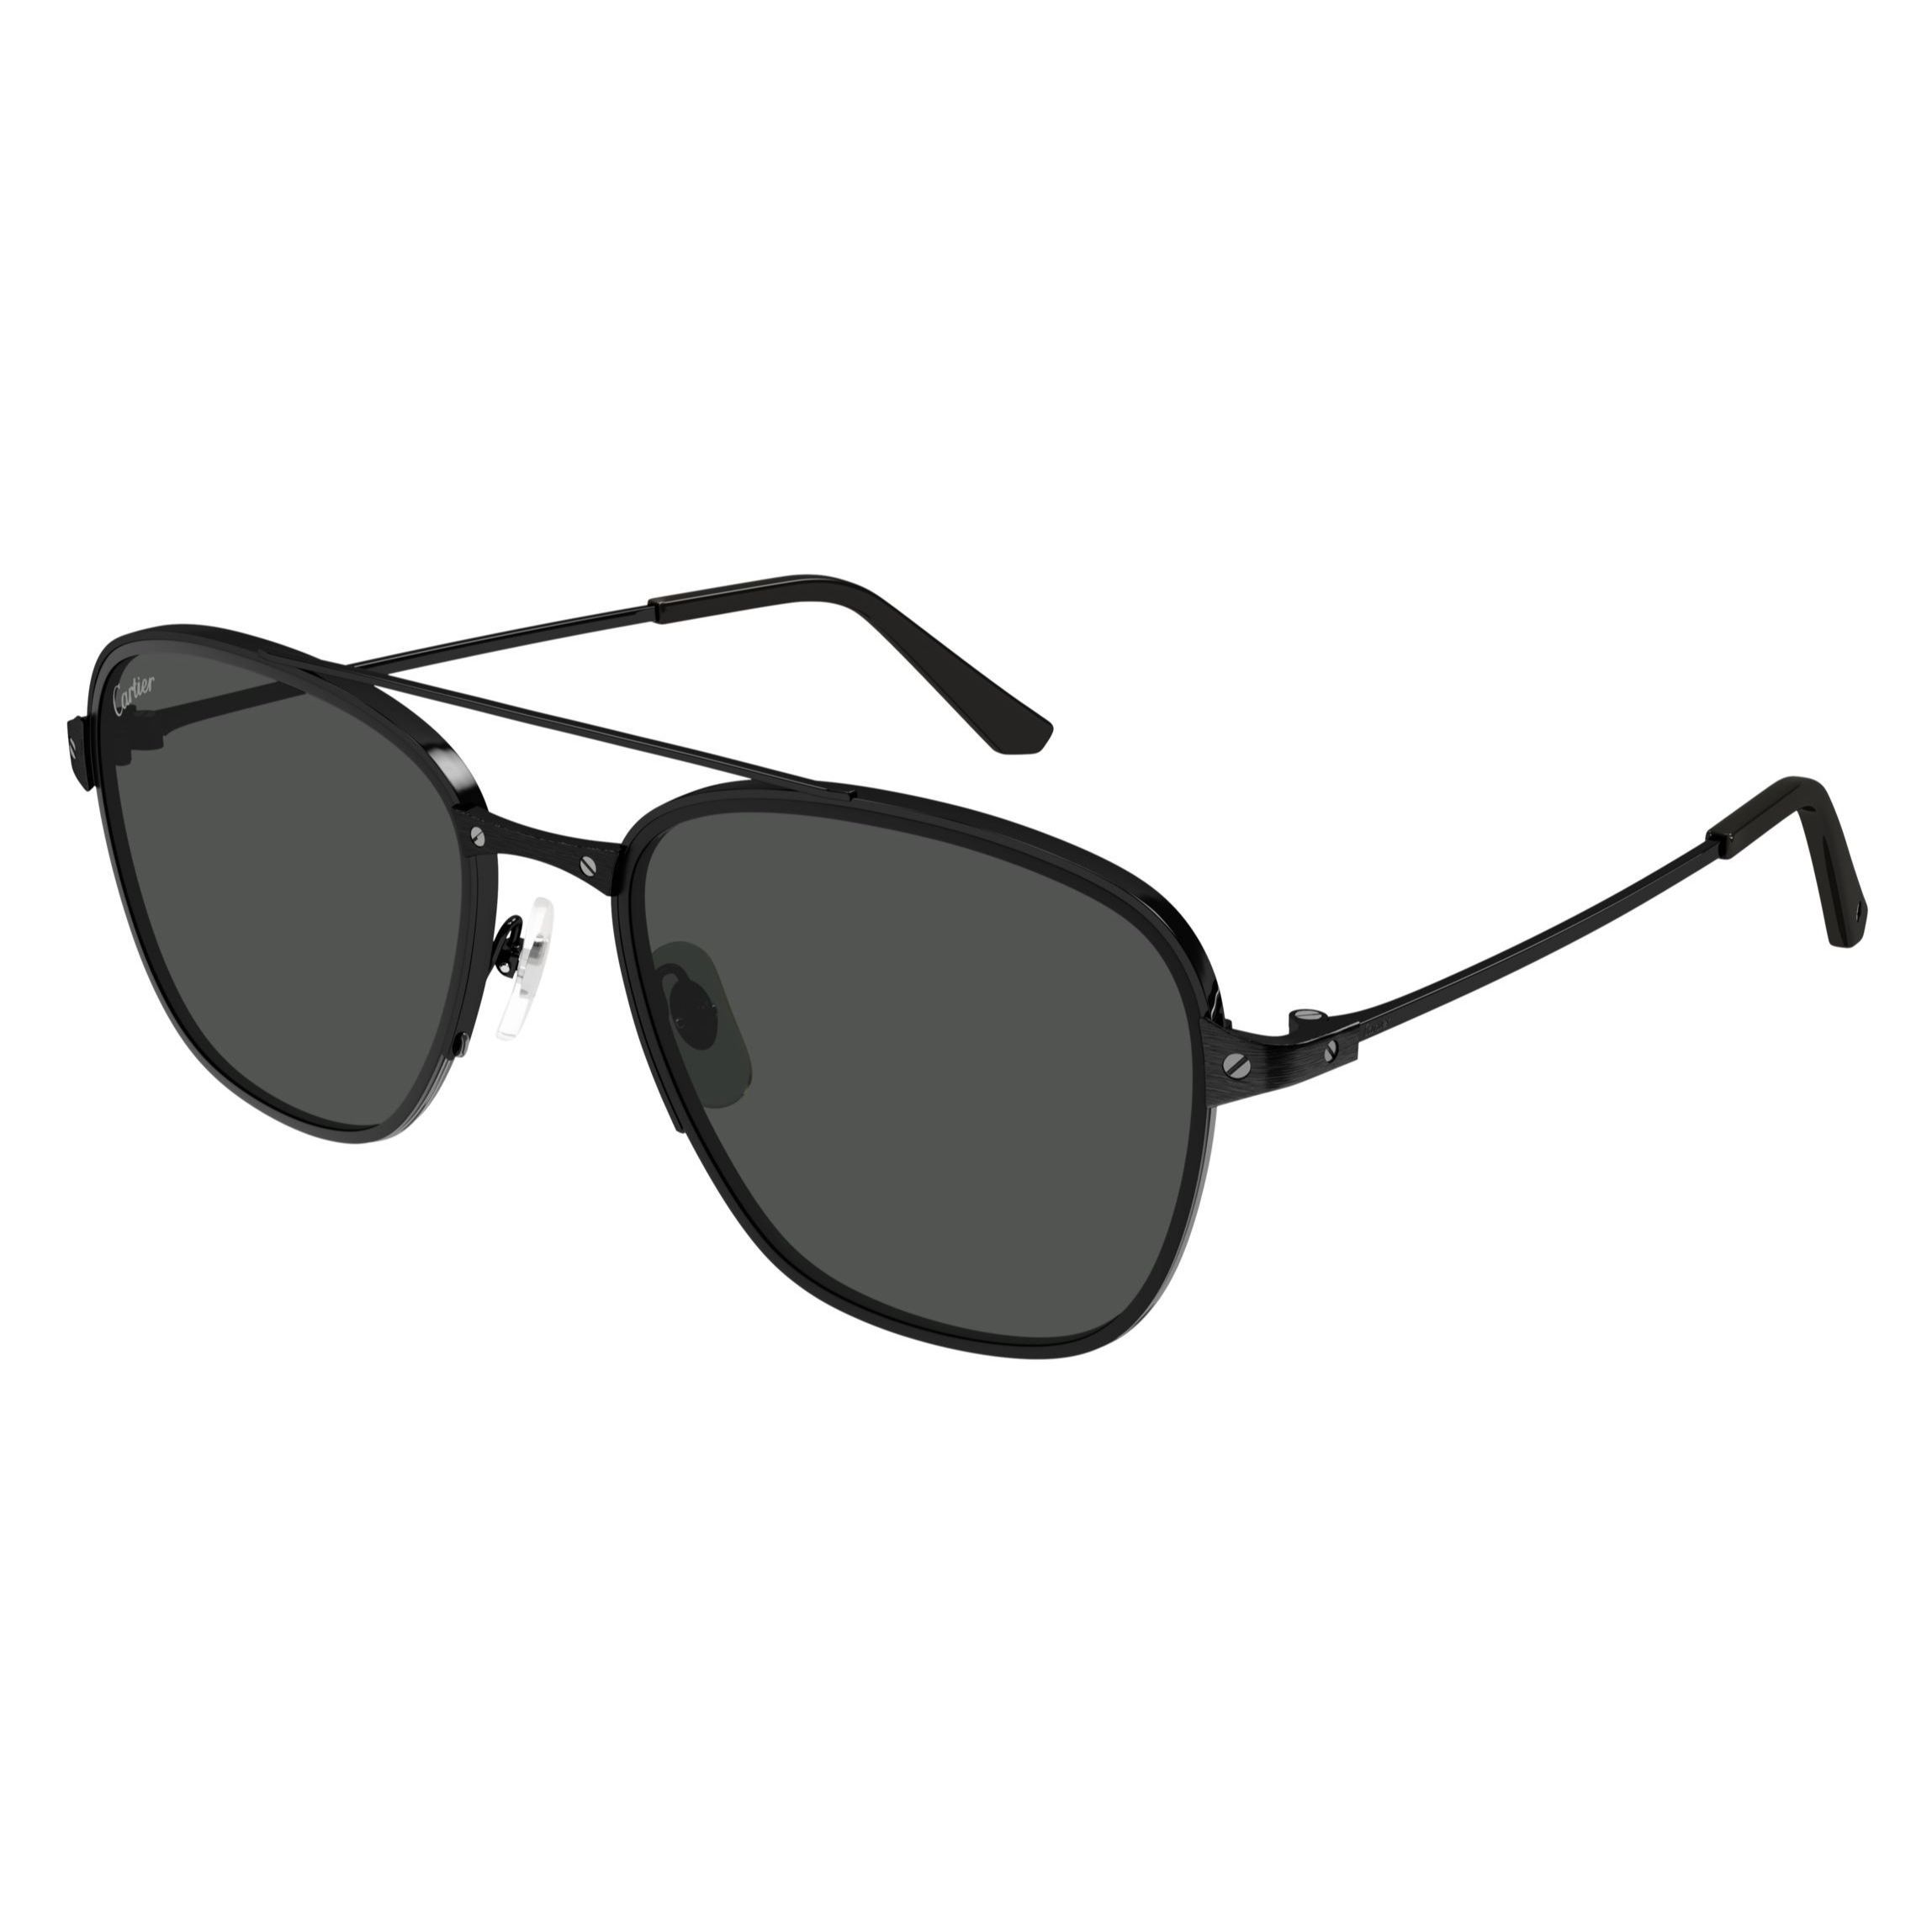 CT0326S Square Sunglasses 005 - size 57